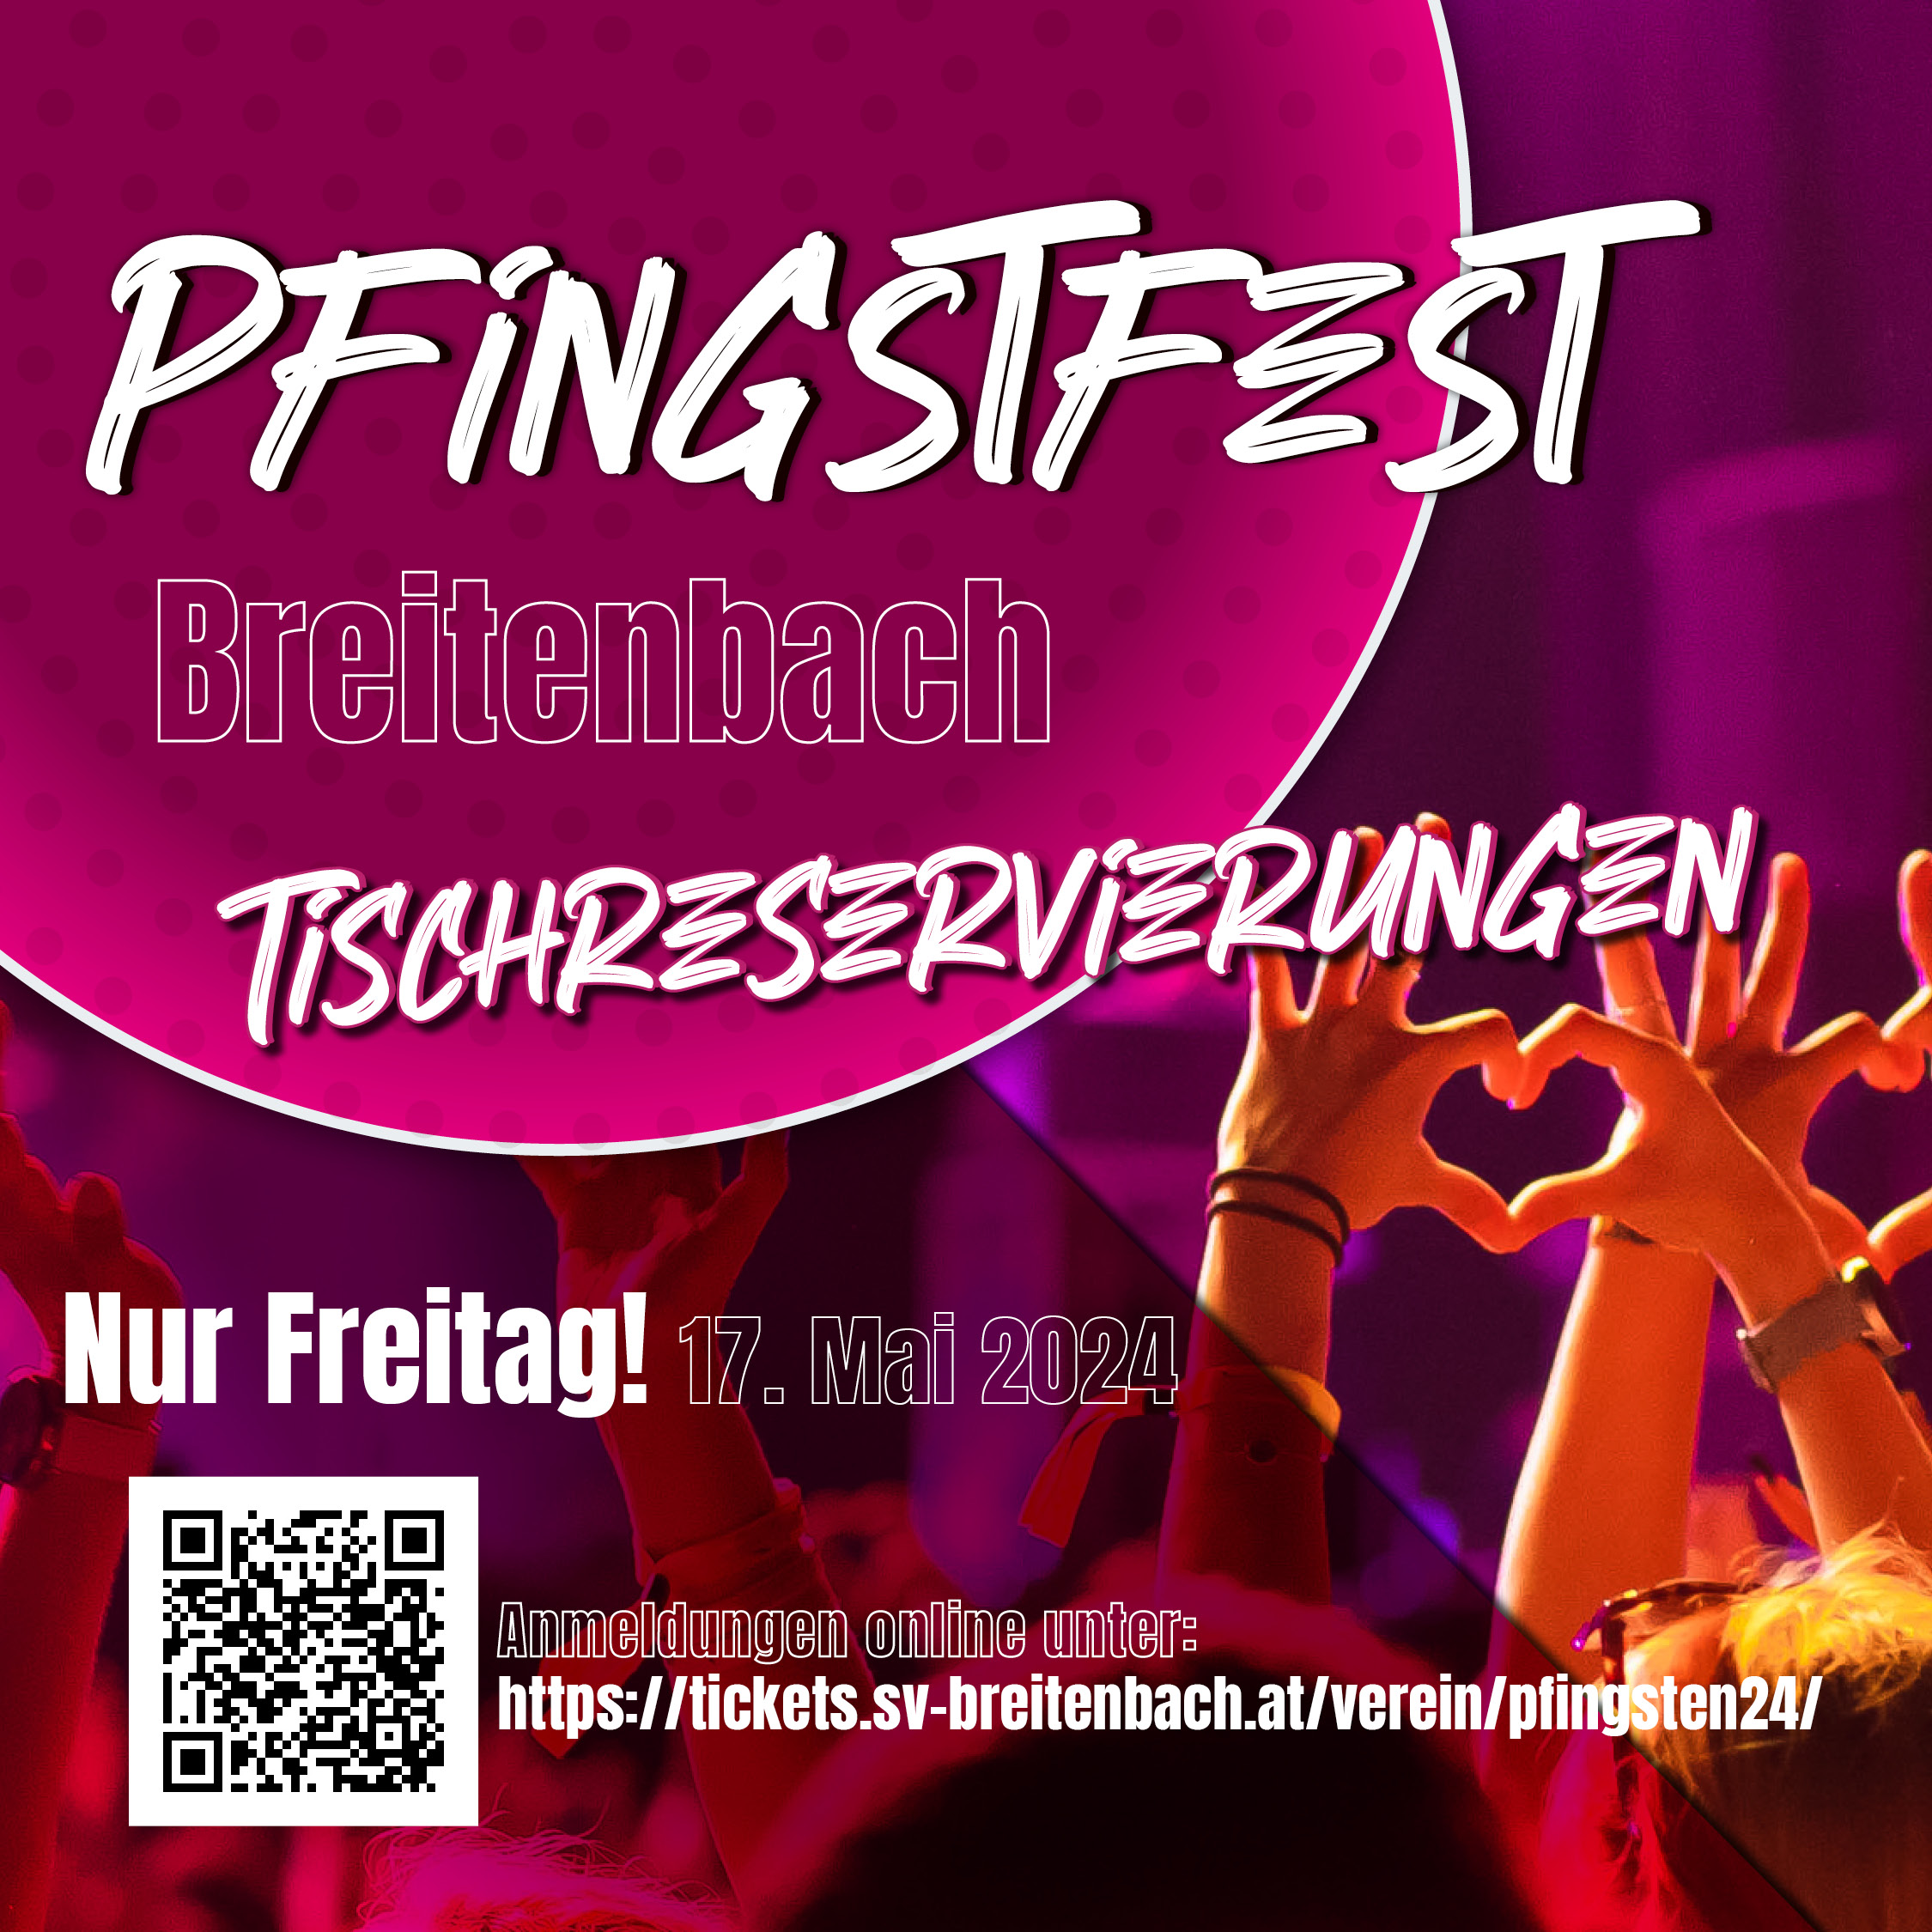 Insta-FB-Posting_Pfingstfest243